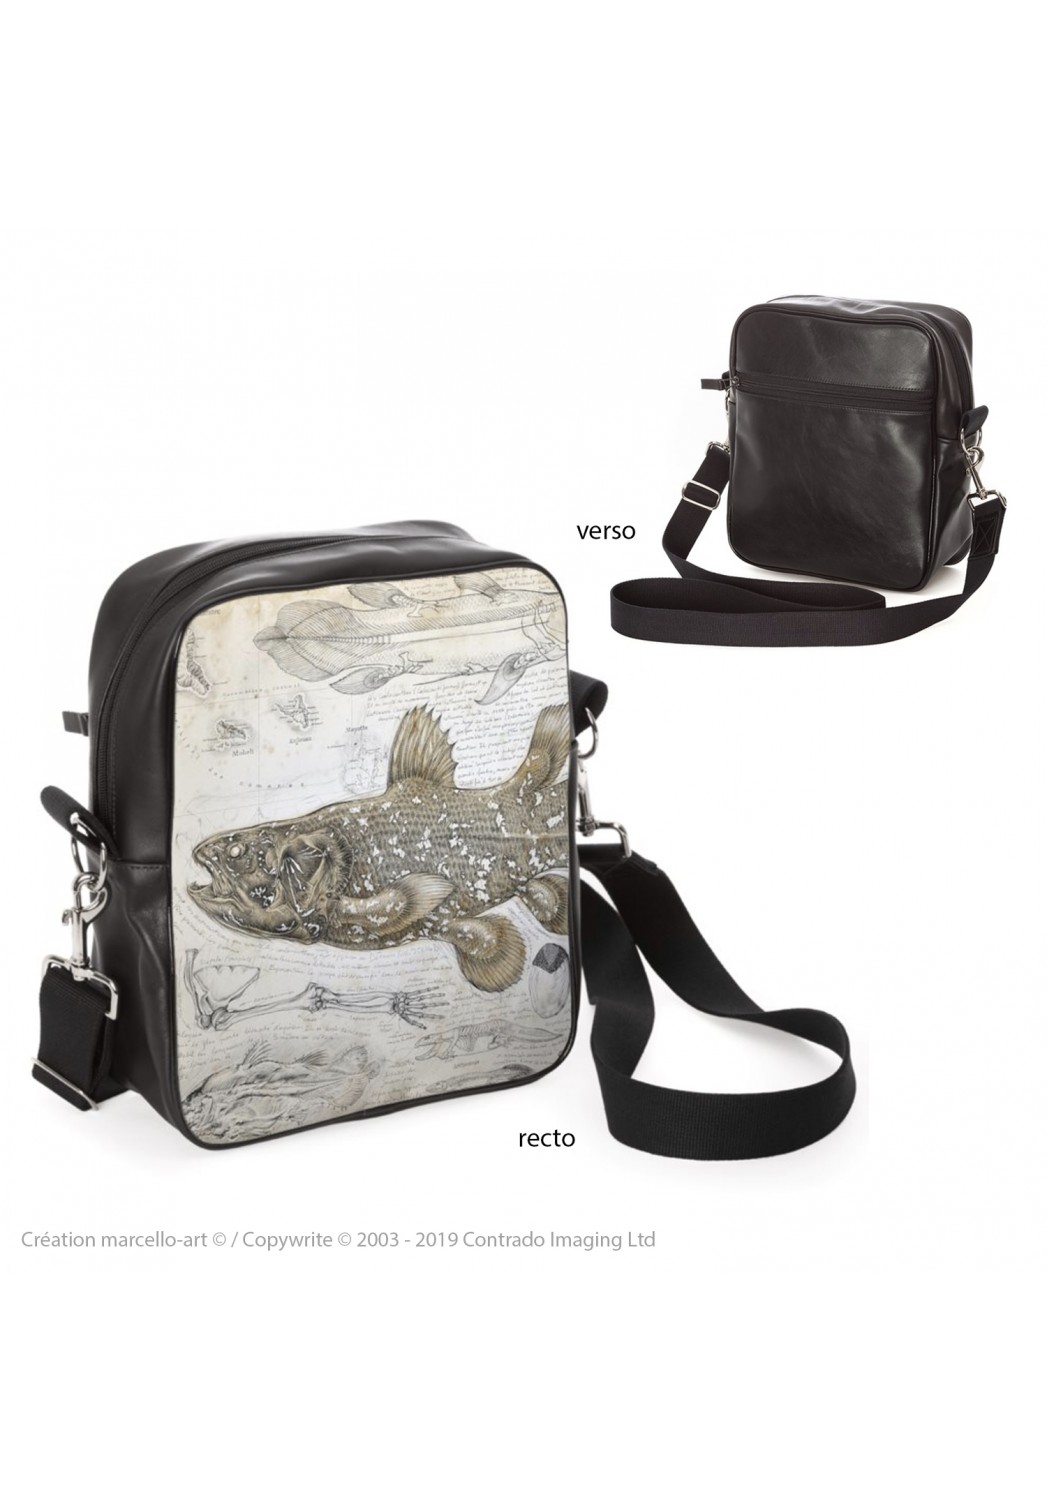 Marcello-art: Fashion accessory Bag 346 Latimeria chalumnae